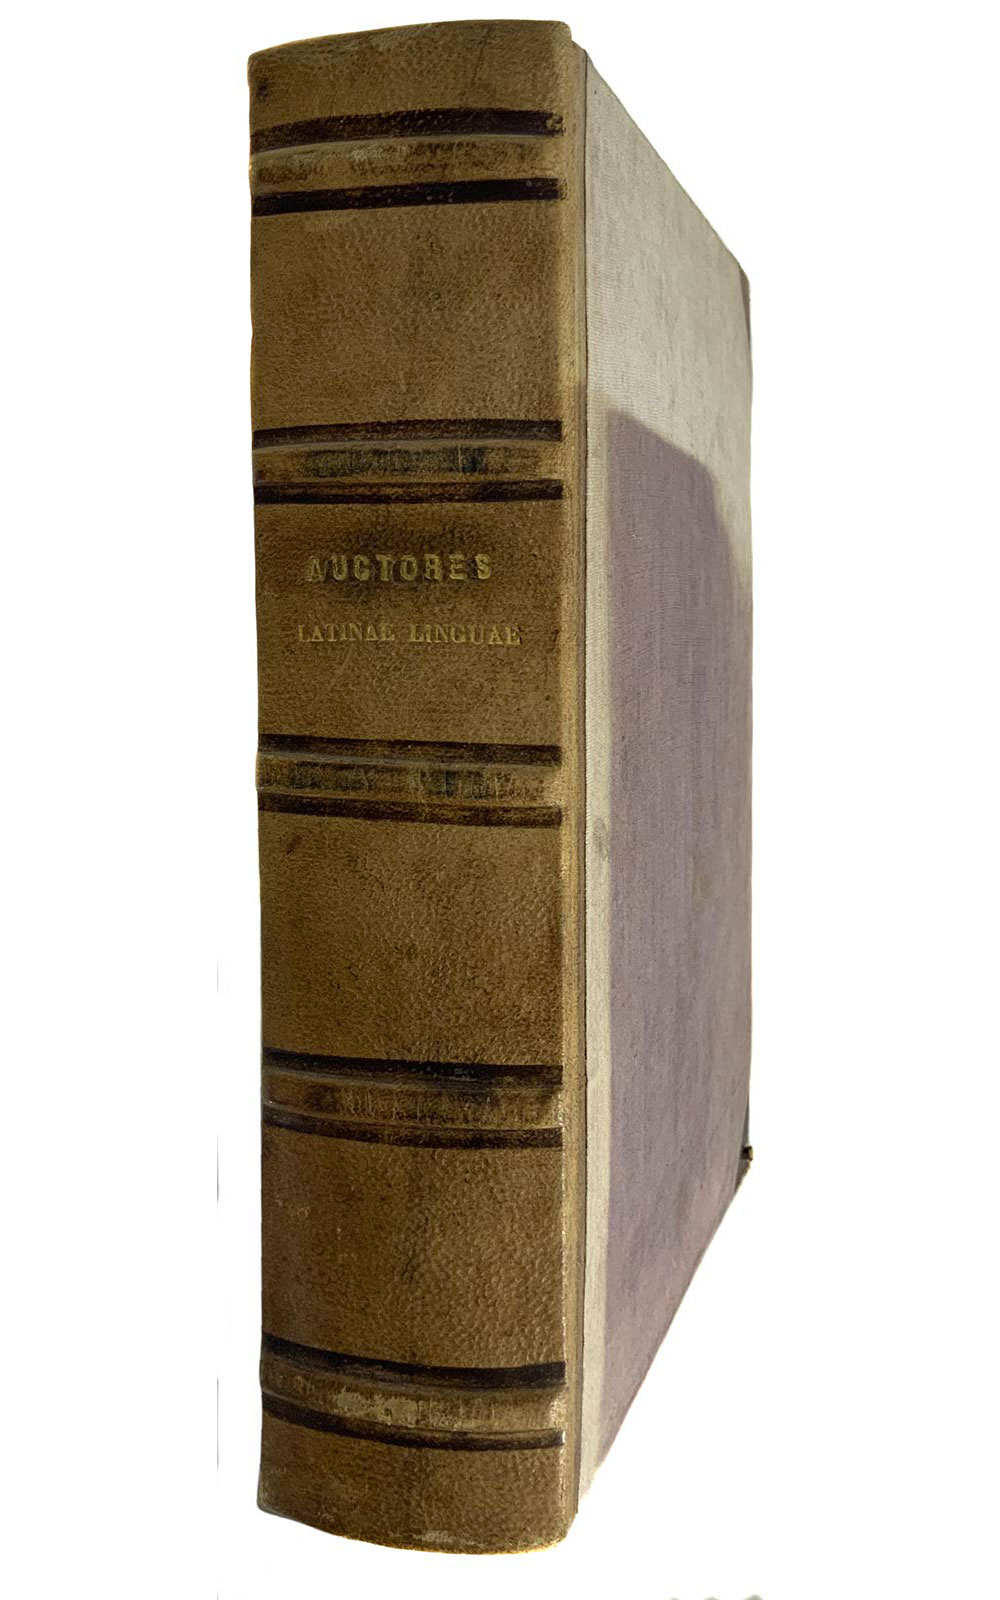 Gothofredus Dionysius, Auctores Latinae linguae in unum redacti corpus. M. Terentius Varro De - Image 3 of 4